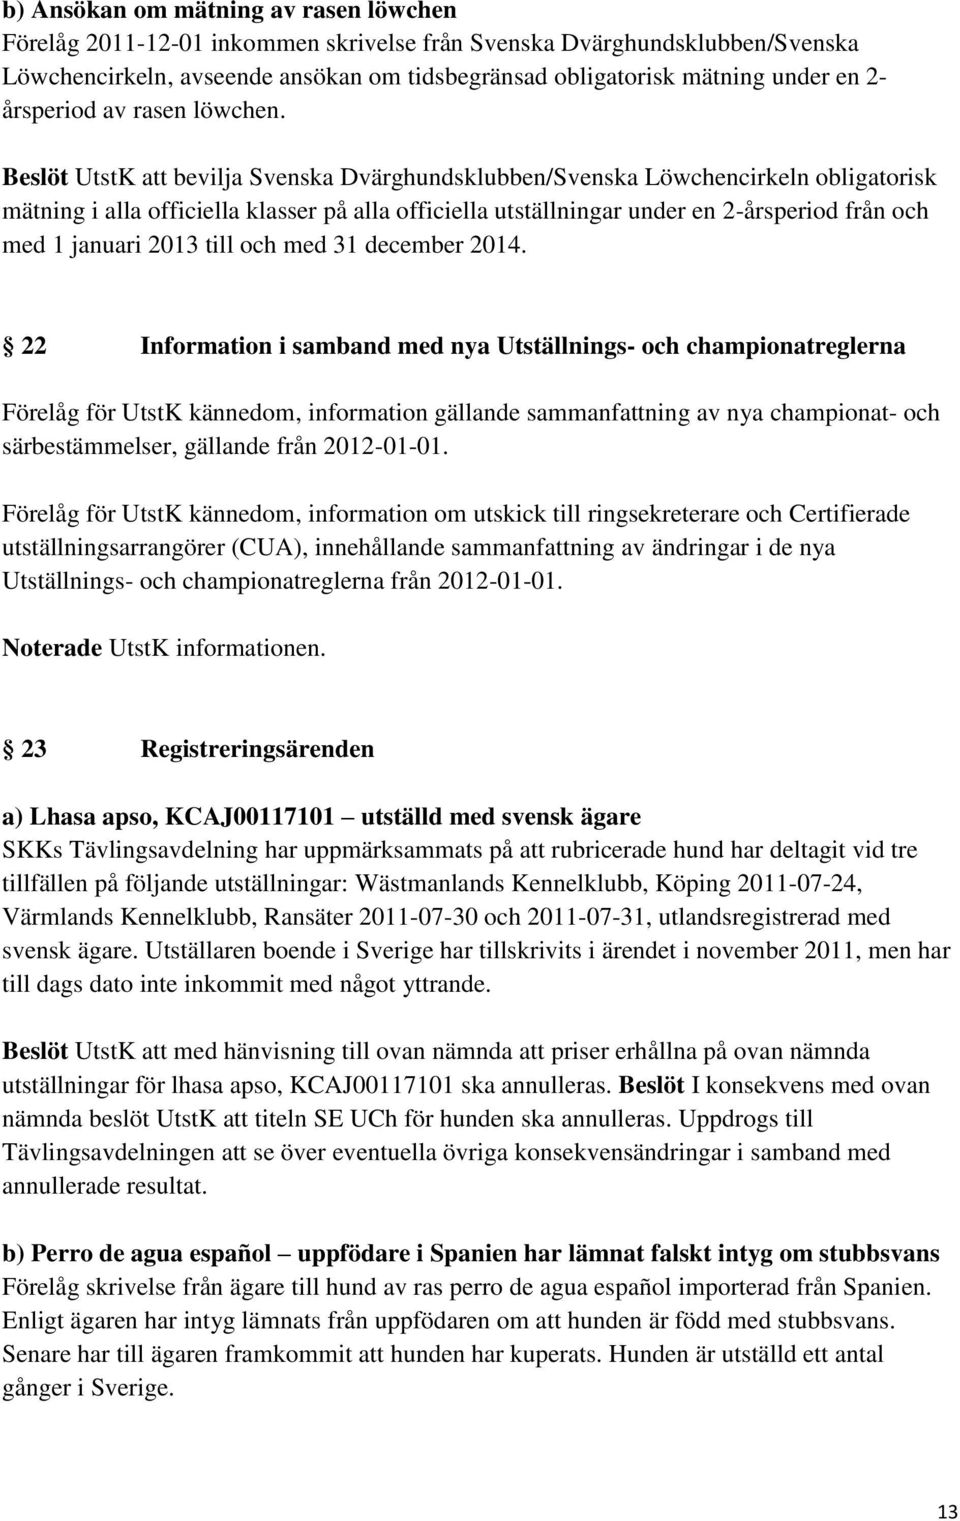 Beslöt UtstK att bevilja Svenska Dvärghundsklubben/Svenska Löwchencirkeln obligatorisk mätning i alla officiella klasser på alla officiella utställningar under en 2-årsperiod från och med 1 januari